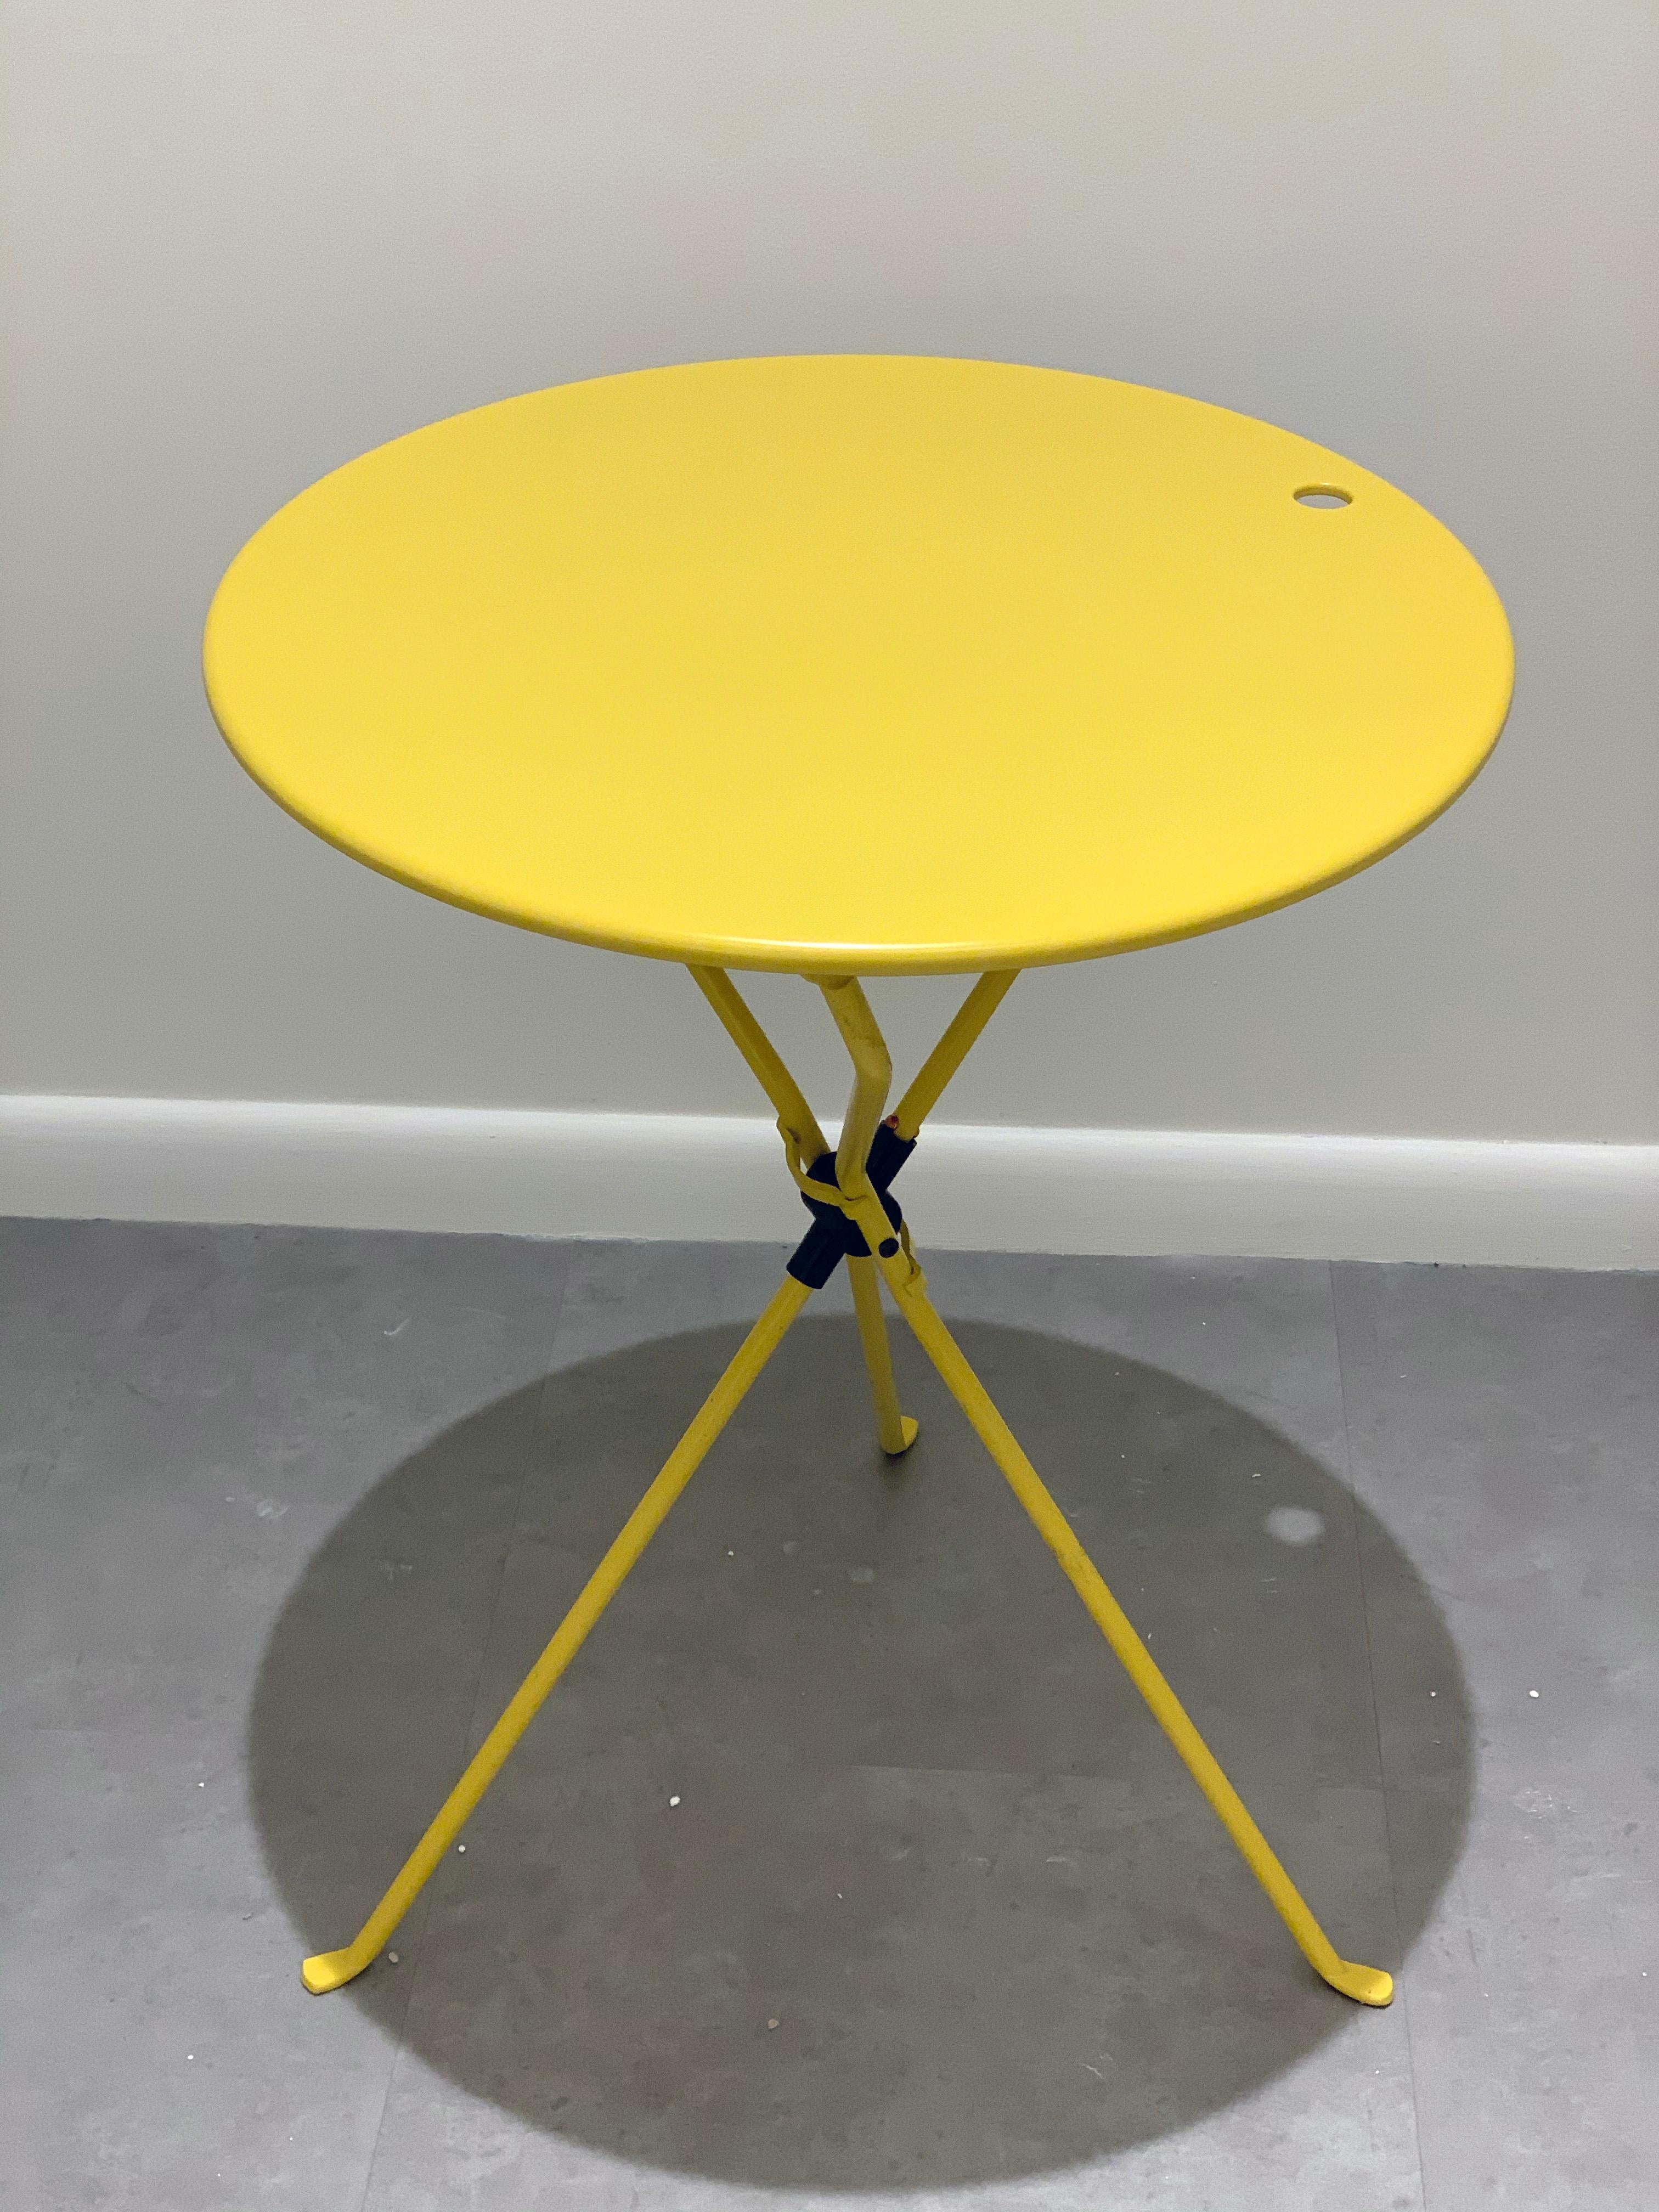 Italian Zanotta Cumano Yellow Folding table designed by Achille Castiglioni